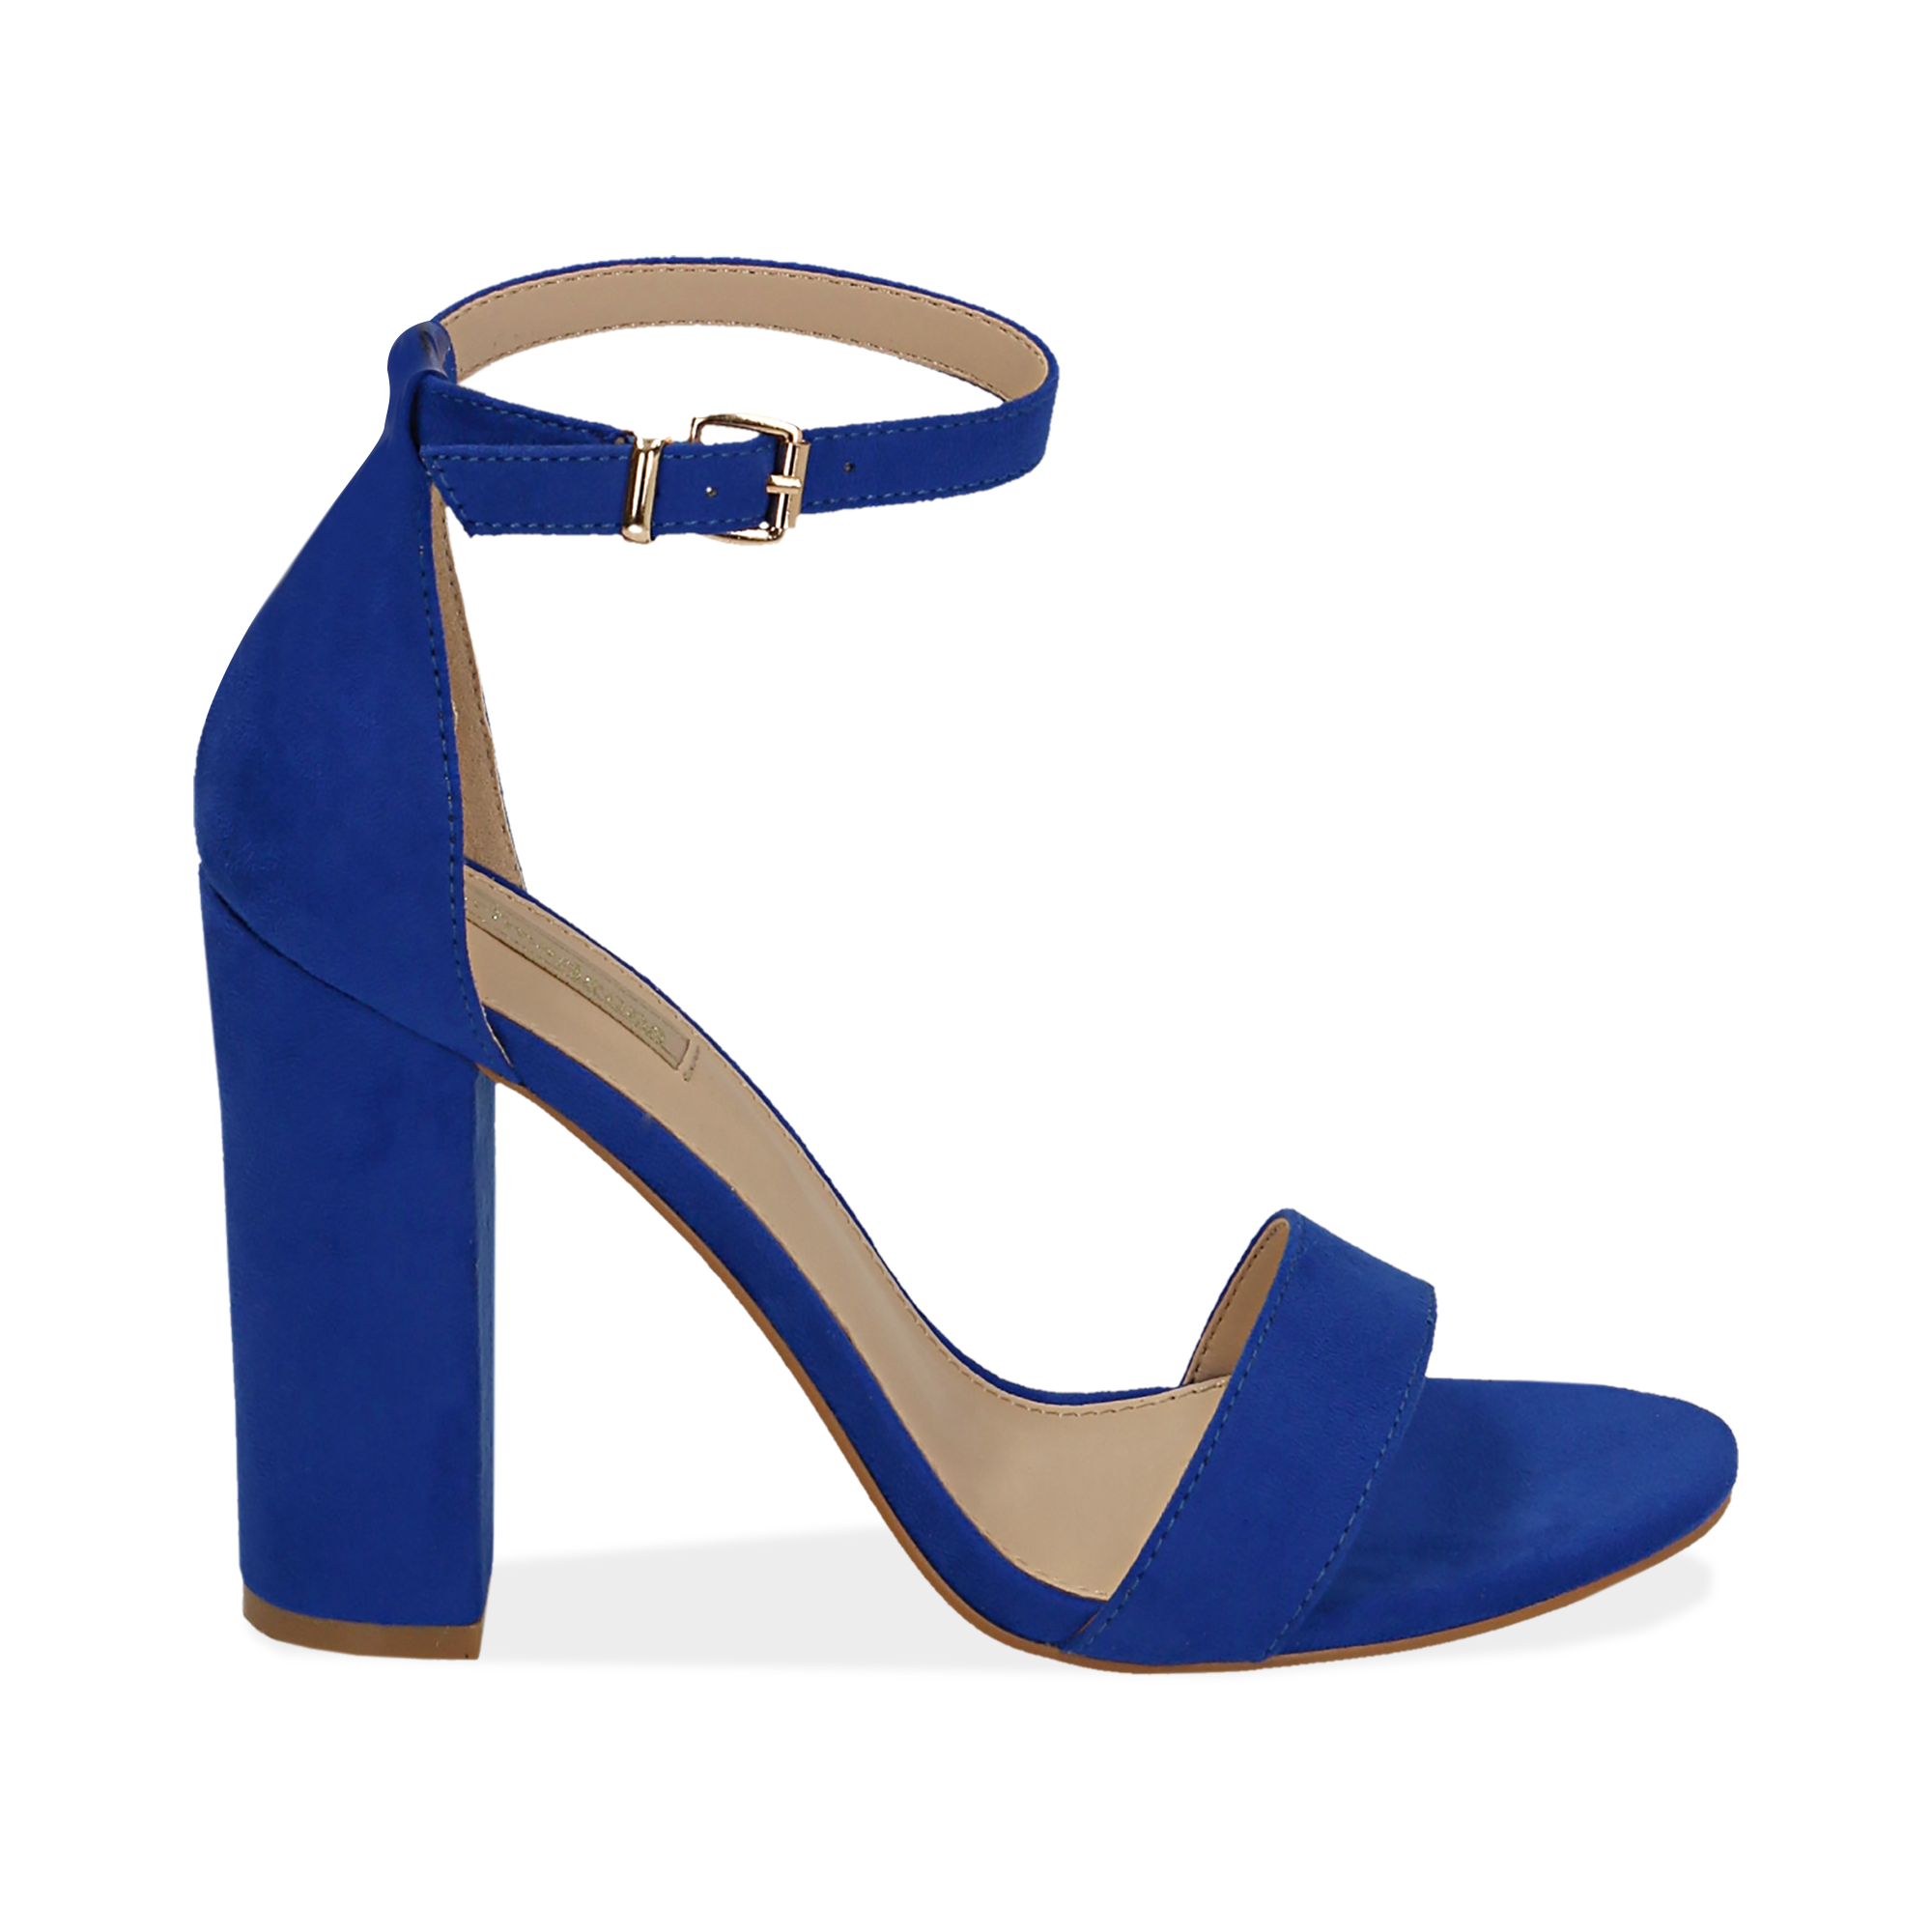 scarpe con tacco blu